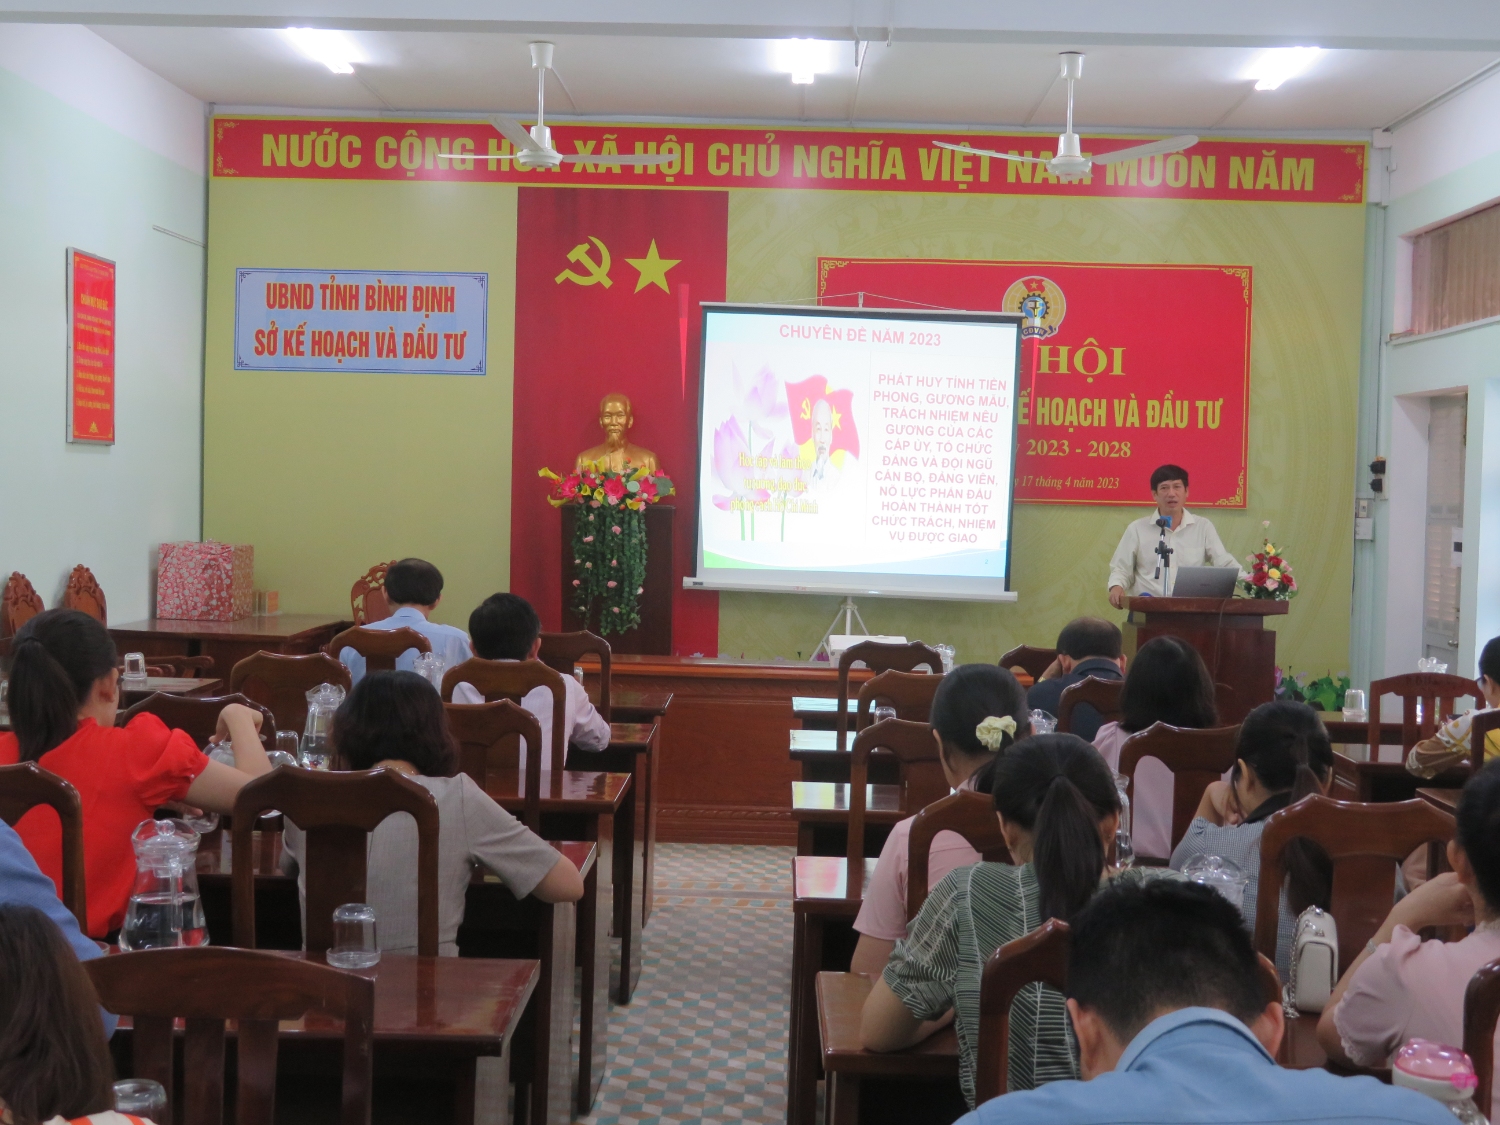 Đồng chí Nguyễn Hữu Lộc - Phó Bí thư Thường trực Đảng ủy Khối các cơ quan tỉnh quán triệt Chuyên đề năm 2023